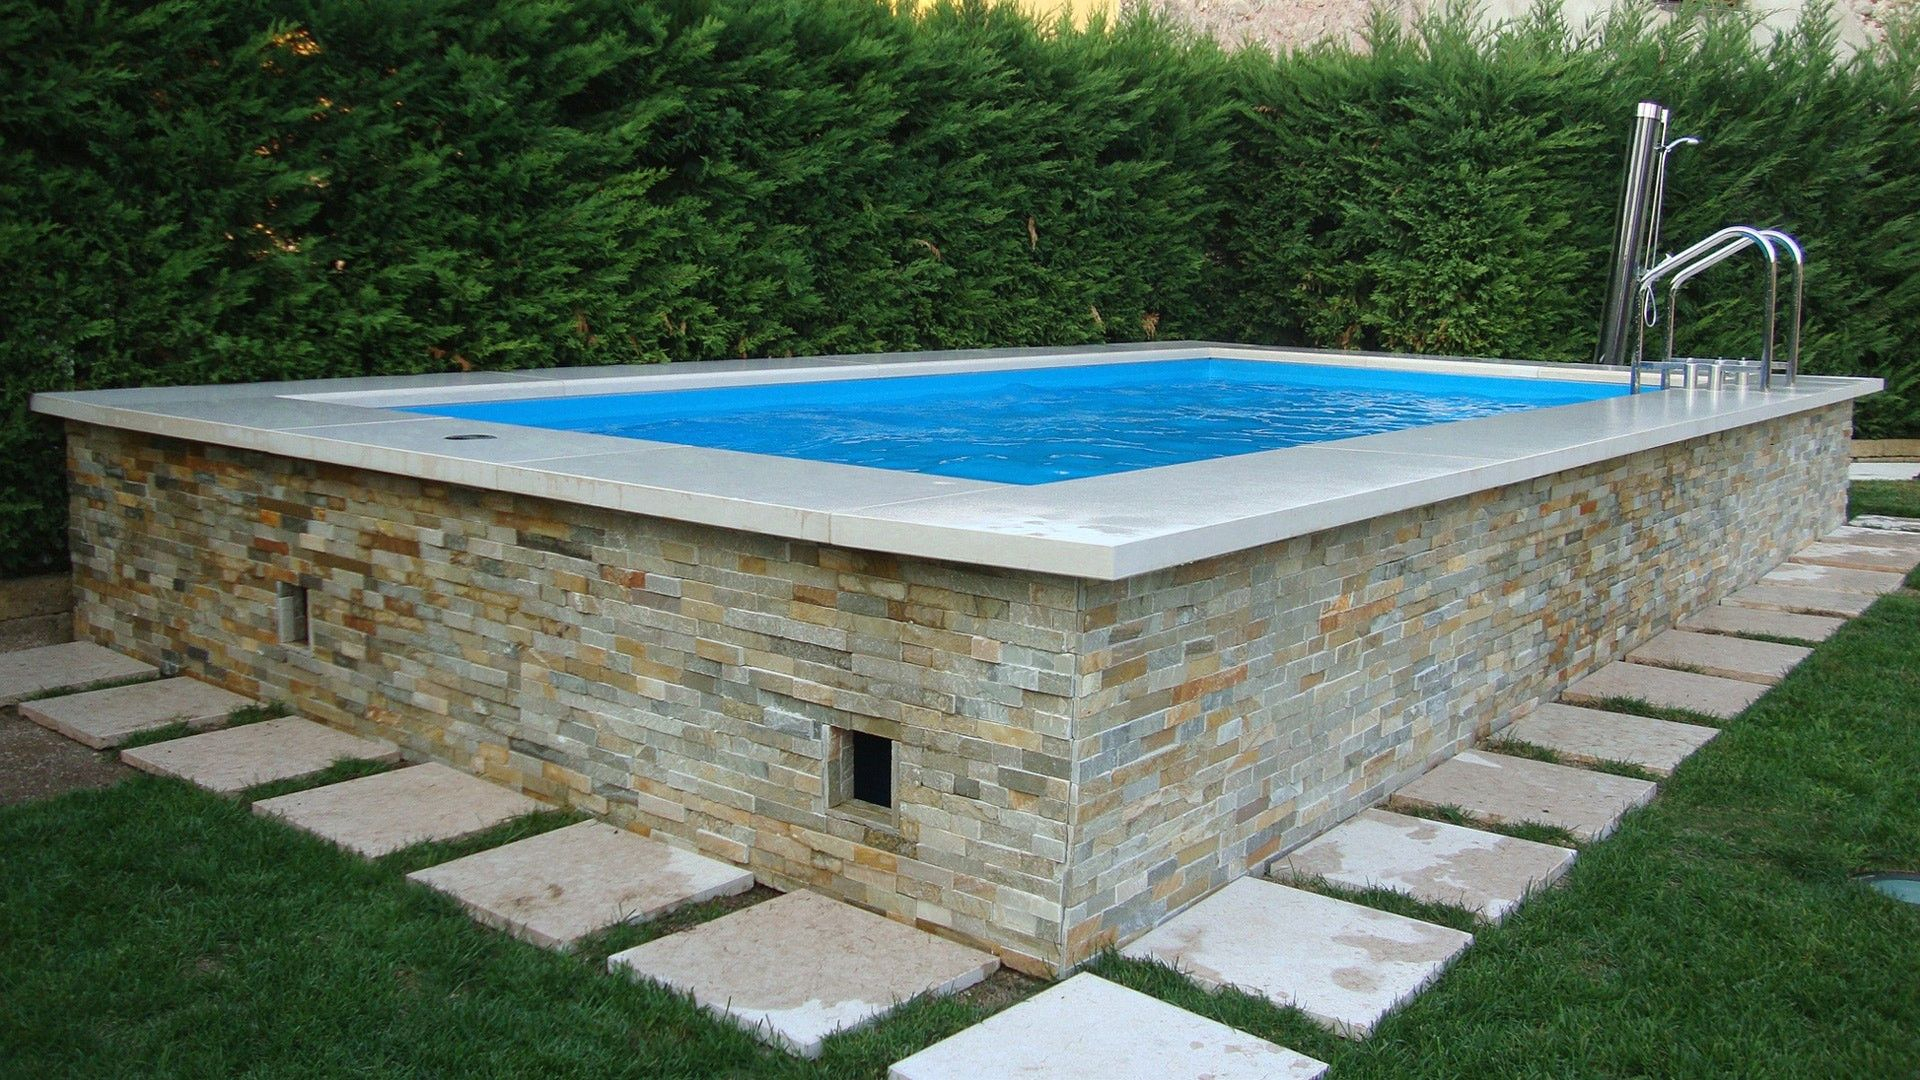 Awesome Piscine Semi Enterrée Castorama | Pool House Designs ... serapportantà Piscine Semi Enterrée Castorama